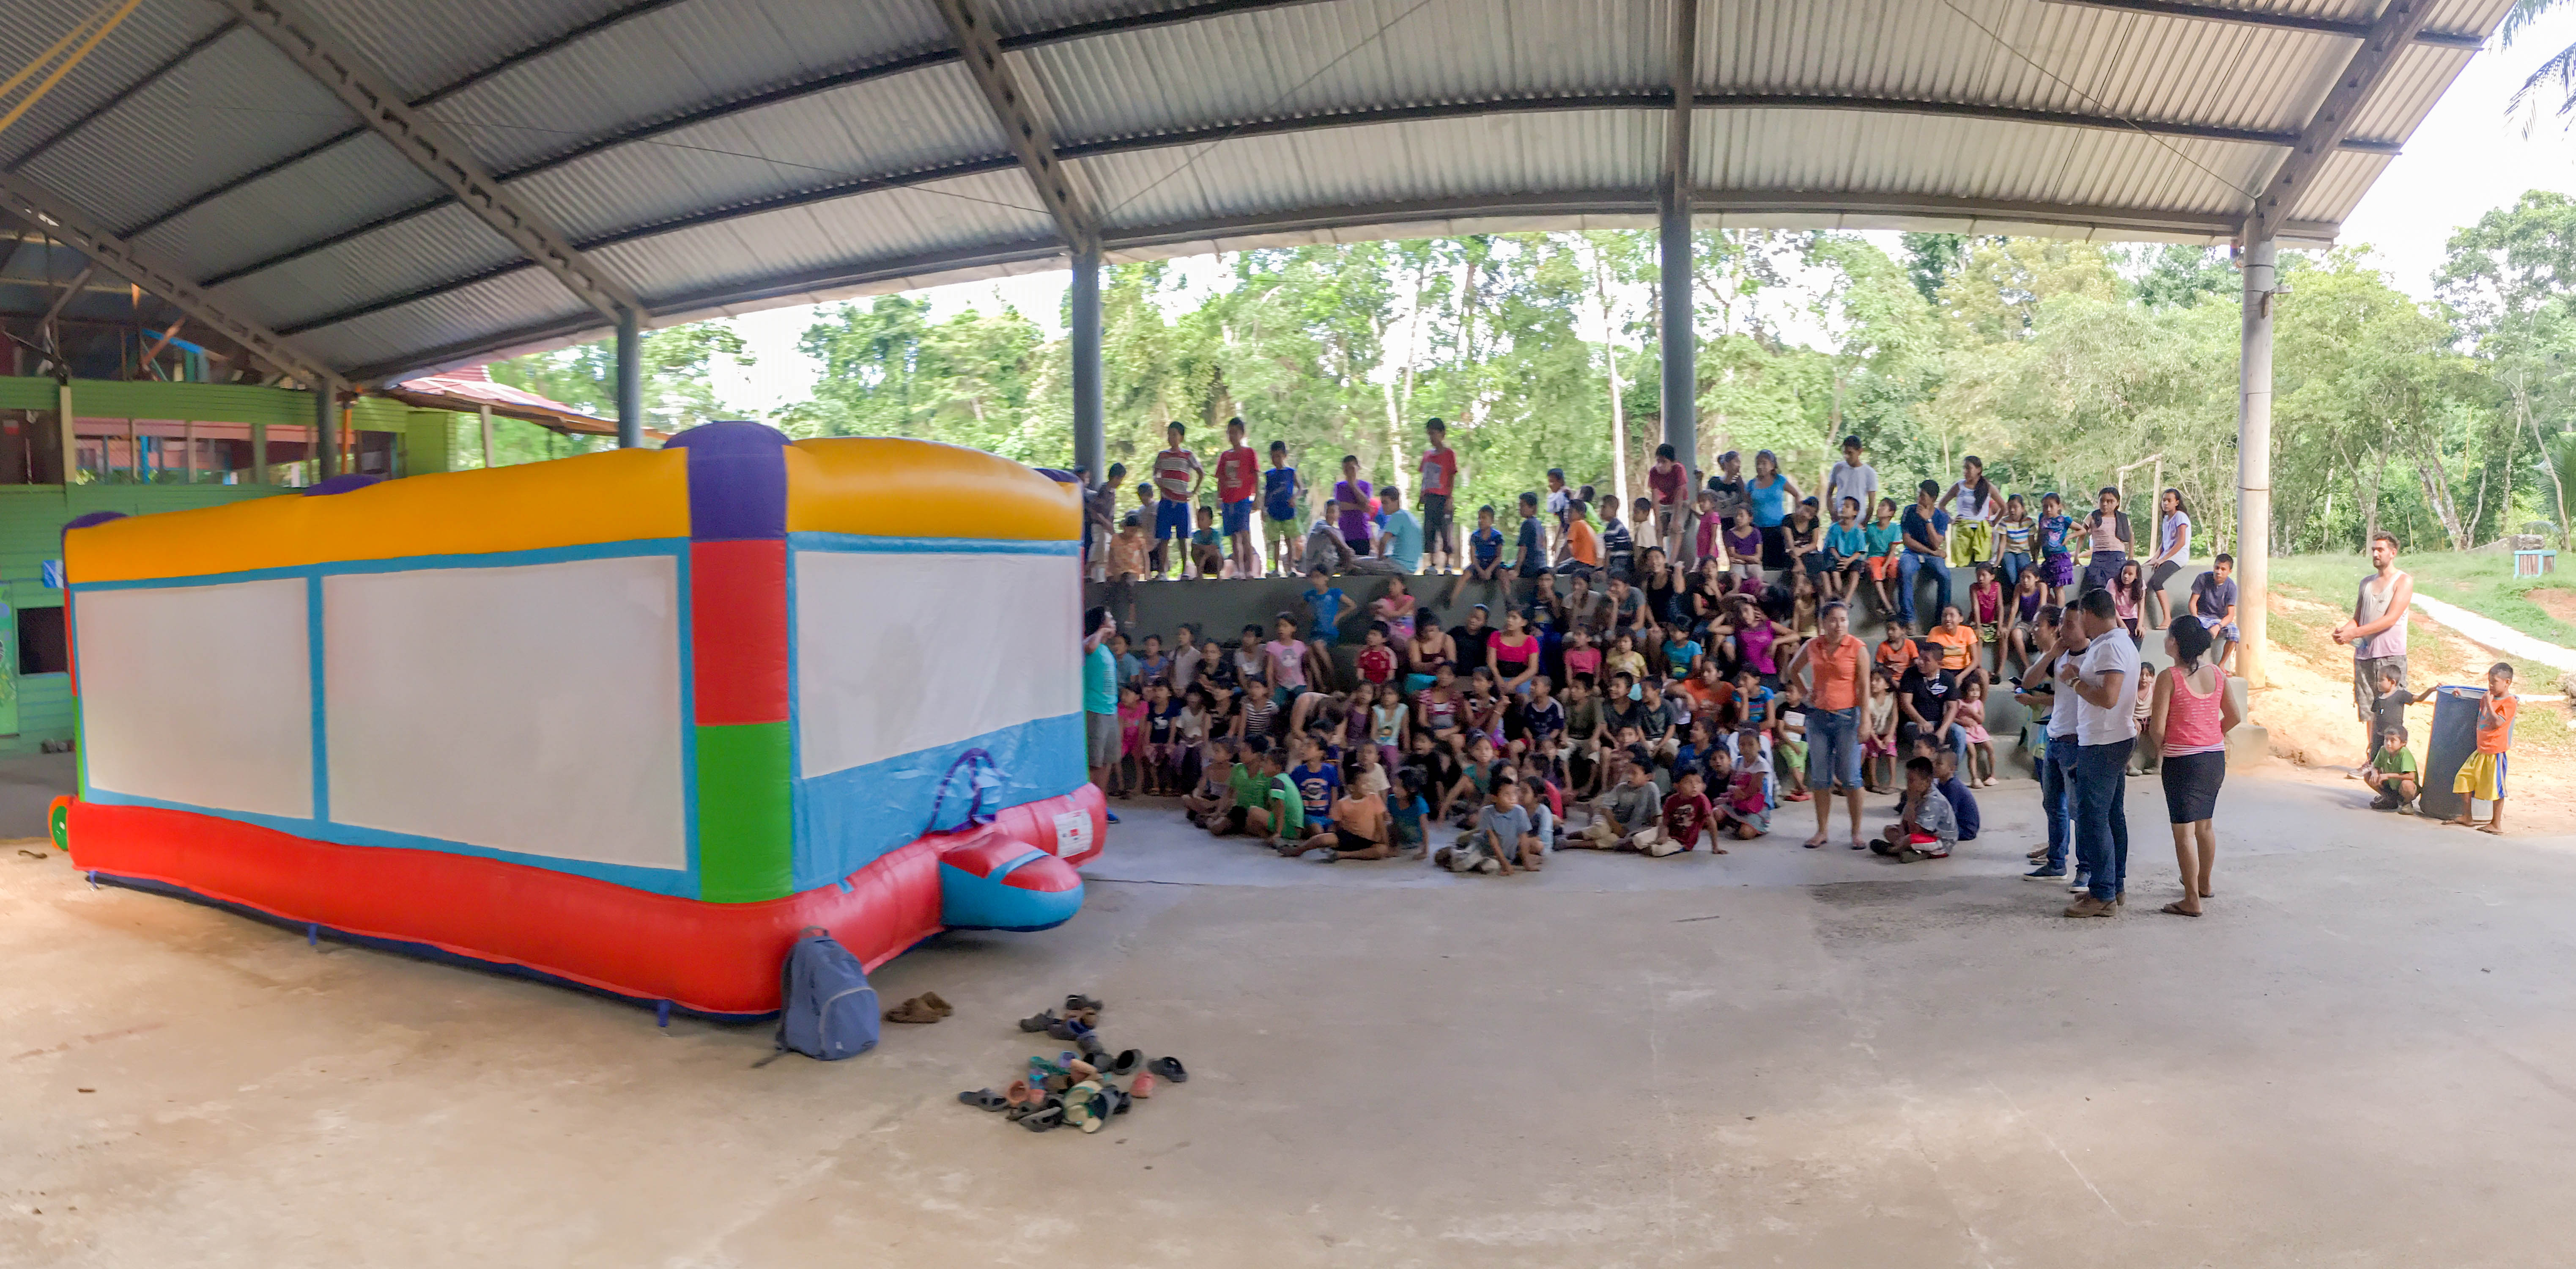 Encuentro con el juego inflable de Expedición Sonrisa en Casa Guatemala, Río Dulce, Guatemala.